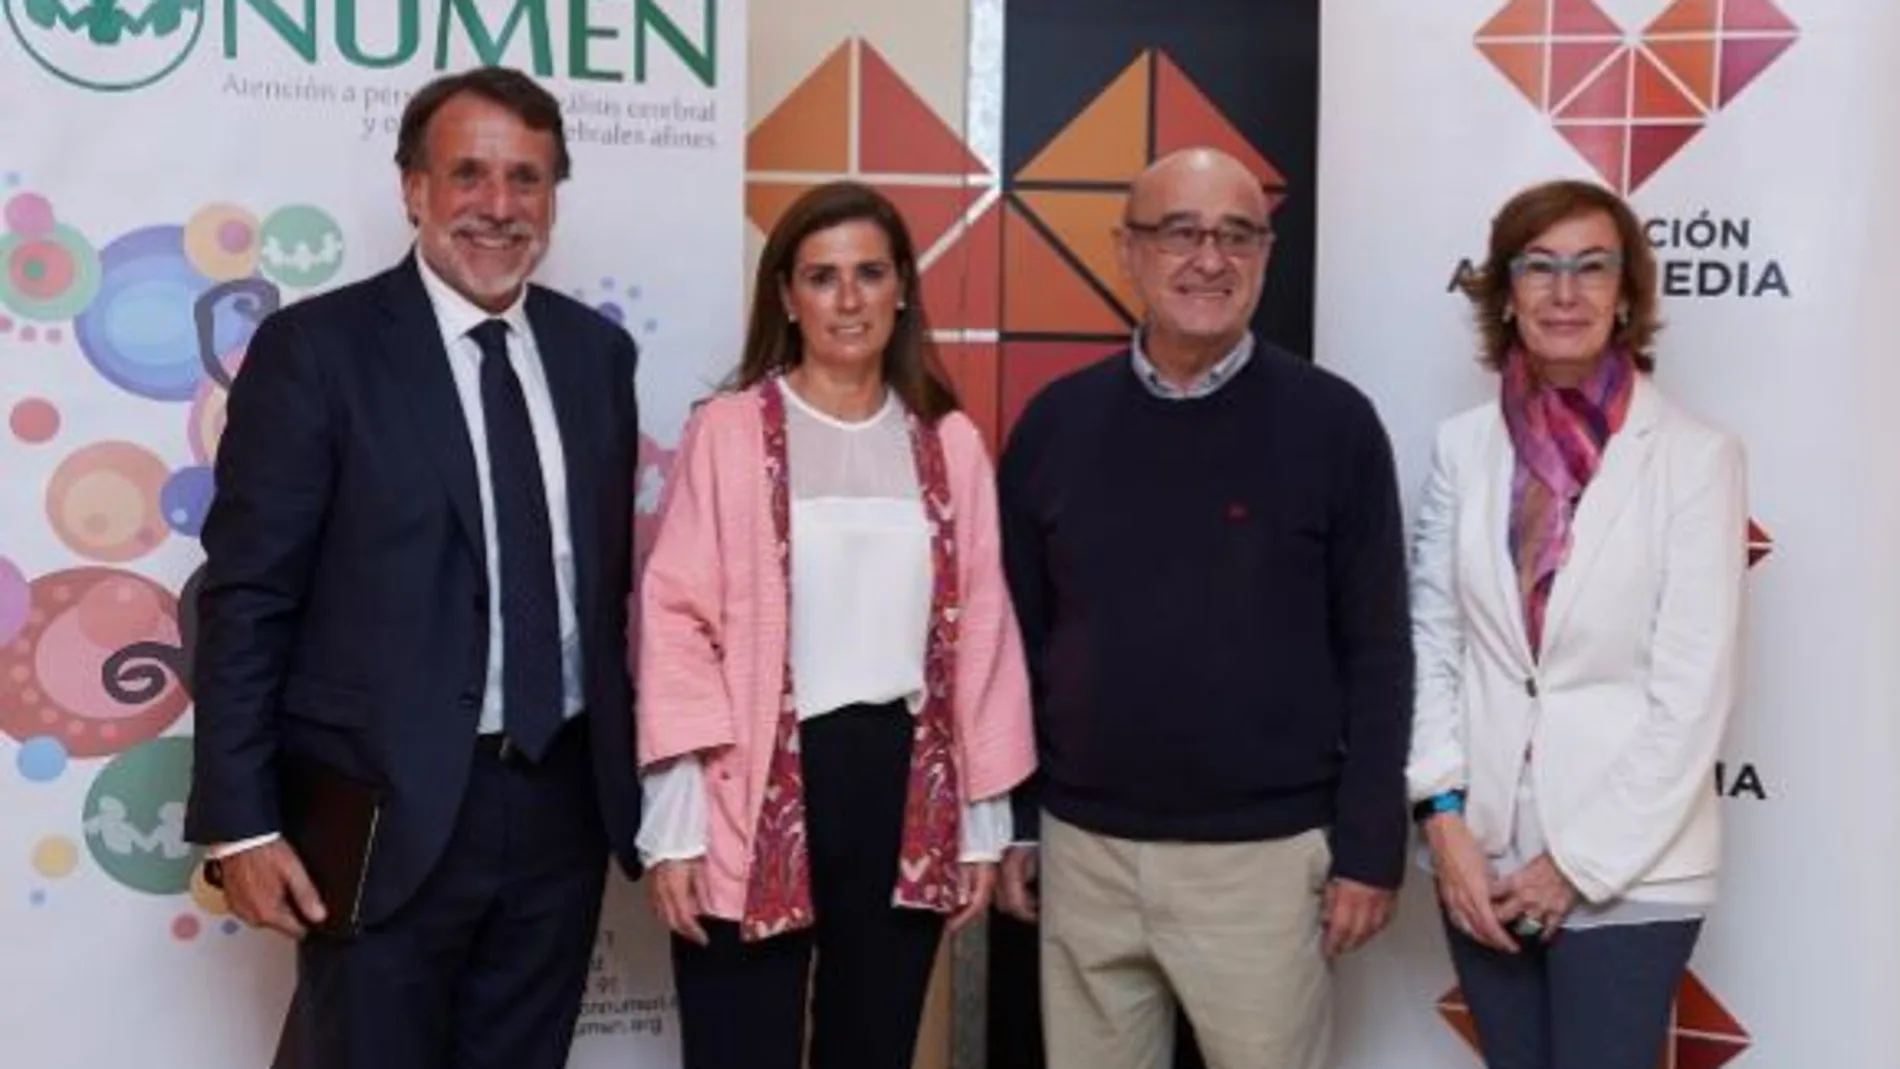 De izquierda a derecha, José Creuheras, presidente de Atresmedia; Concha Vereterra, gerente de la Fundación Numen; Rafael Sánchez, presidente de la Fundación NUMEN y Carmen Bieger, directora de la Fundación Atresmedia